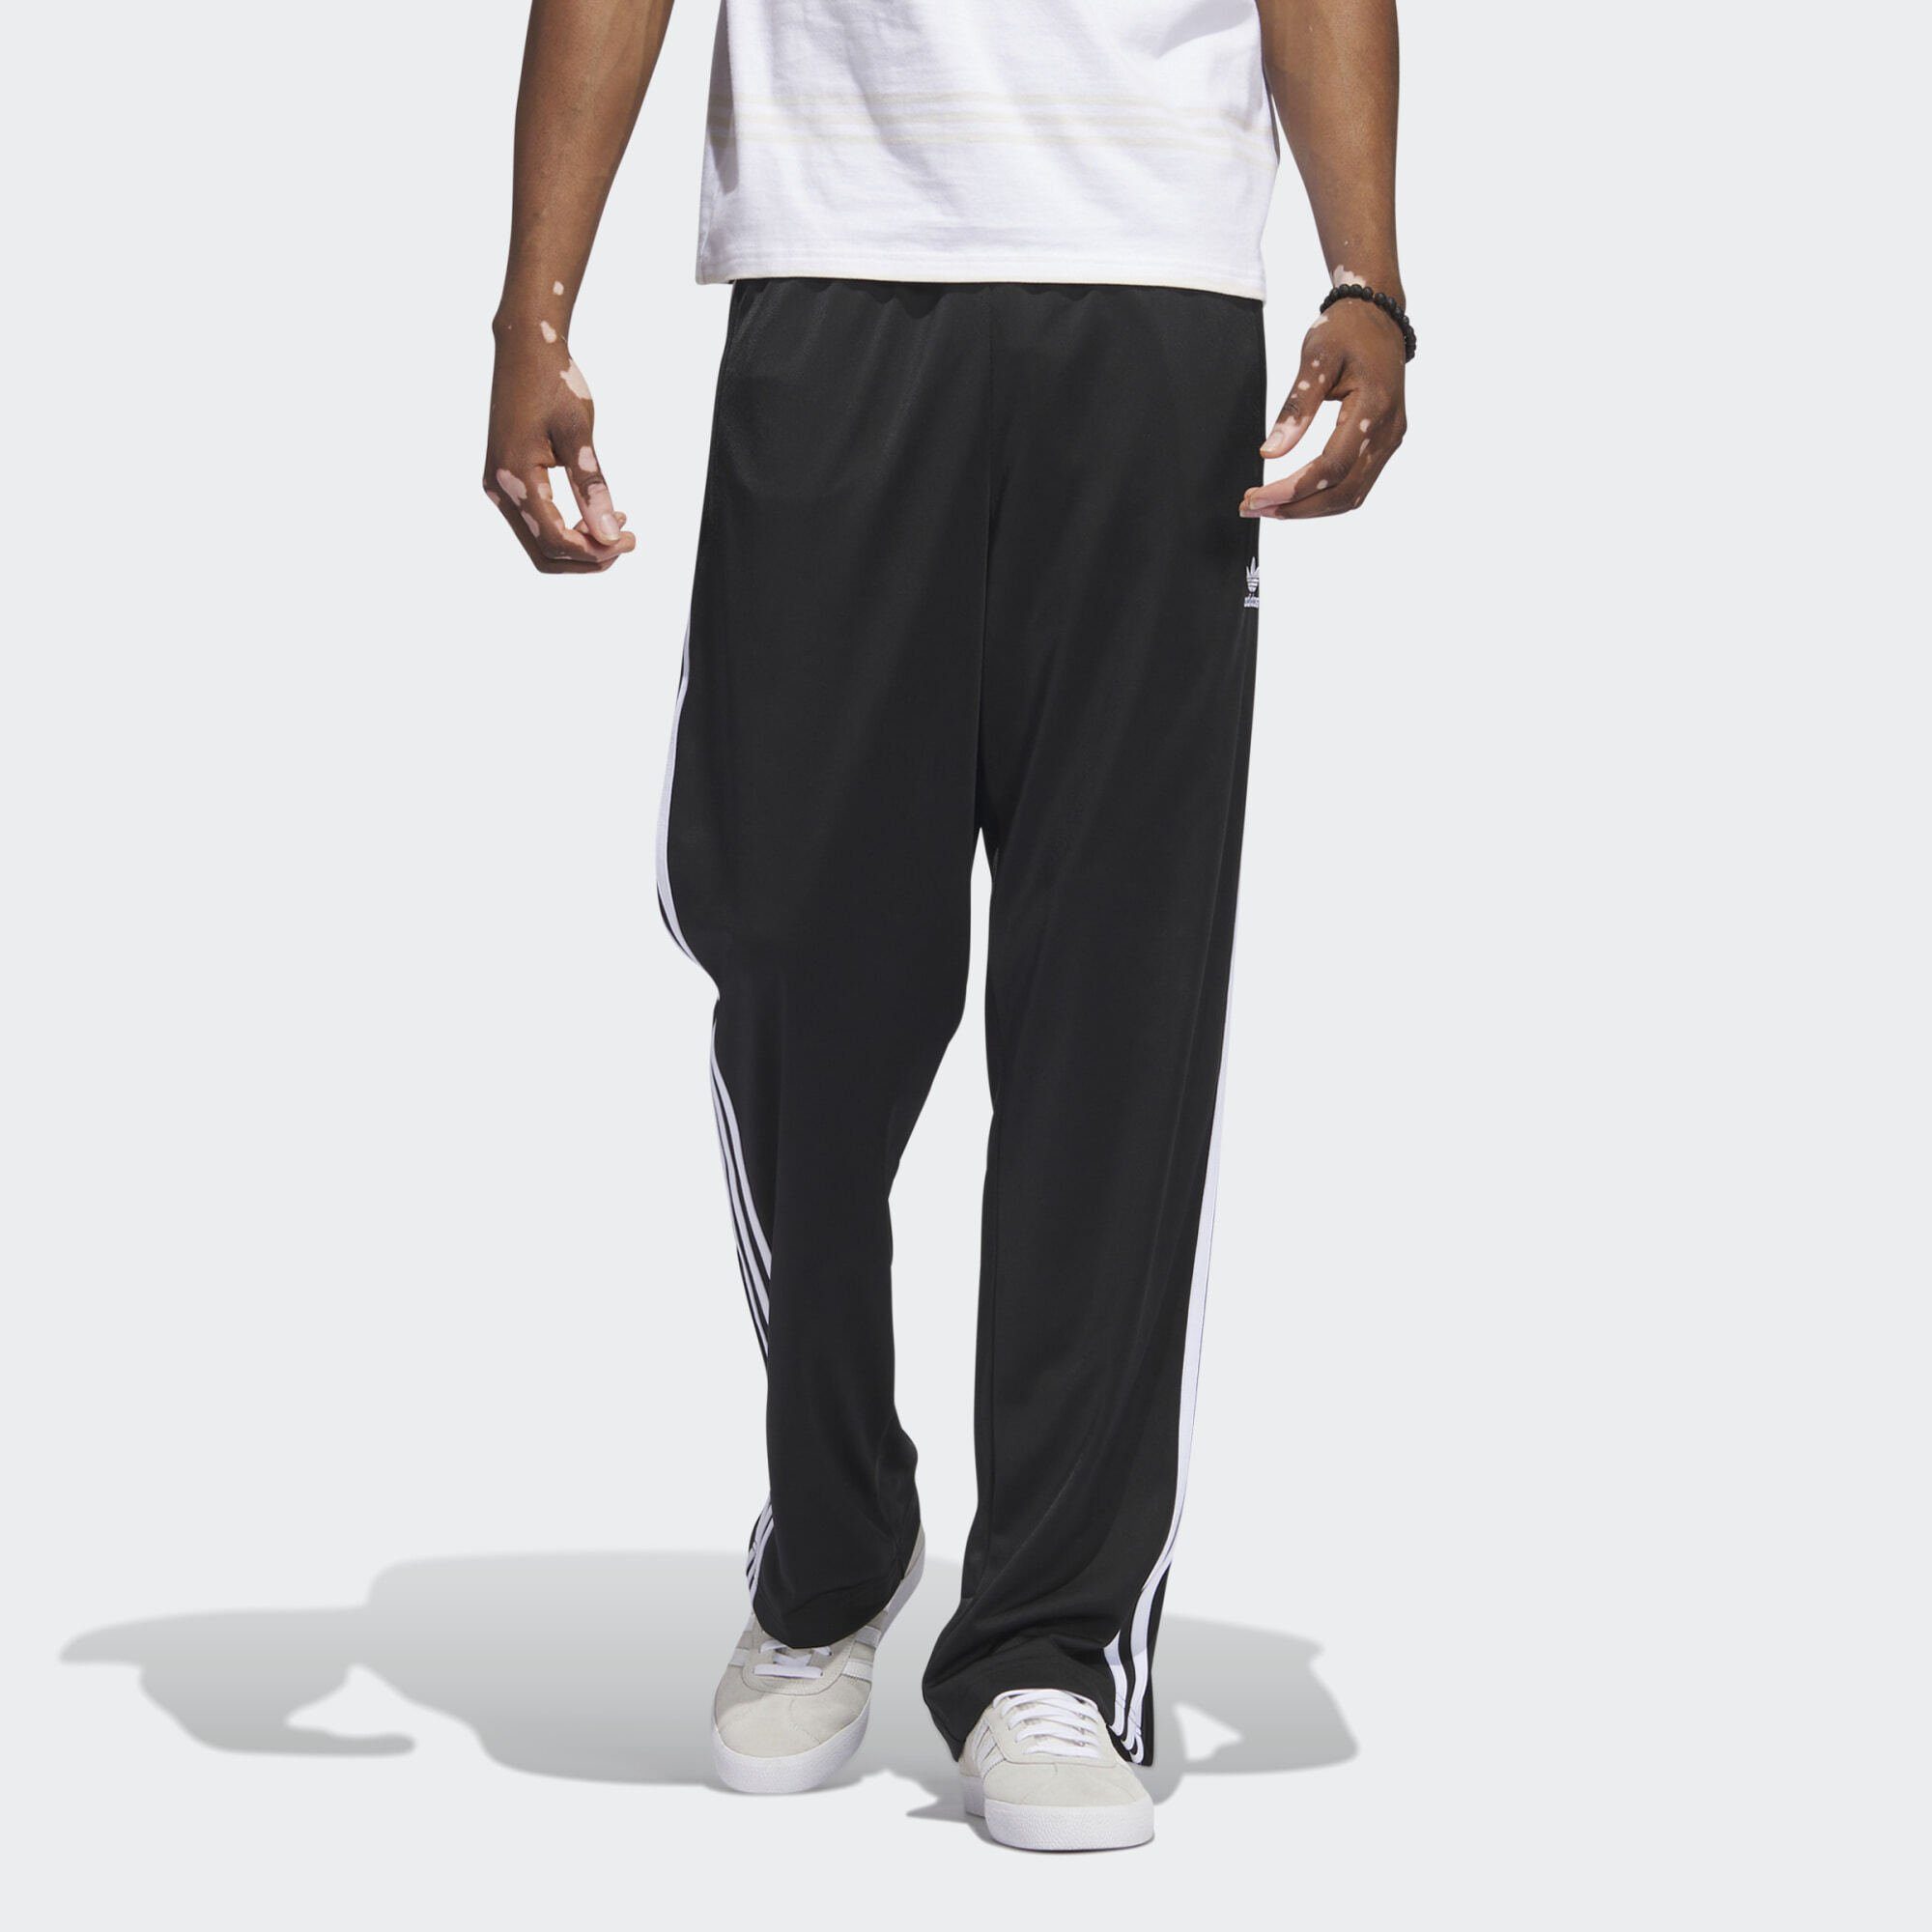 ADICOLOR CLASSICS Black Leichtathletik-Hose adidas White FIREBIRD TRAININGSHOSE / Originals